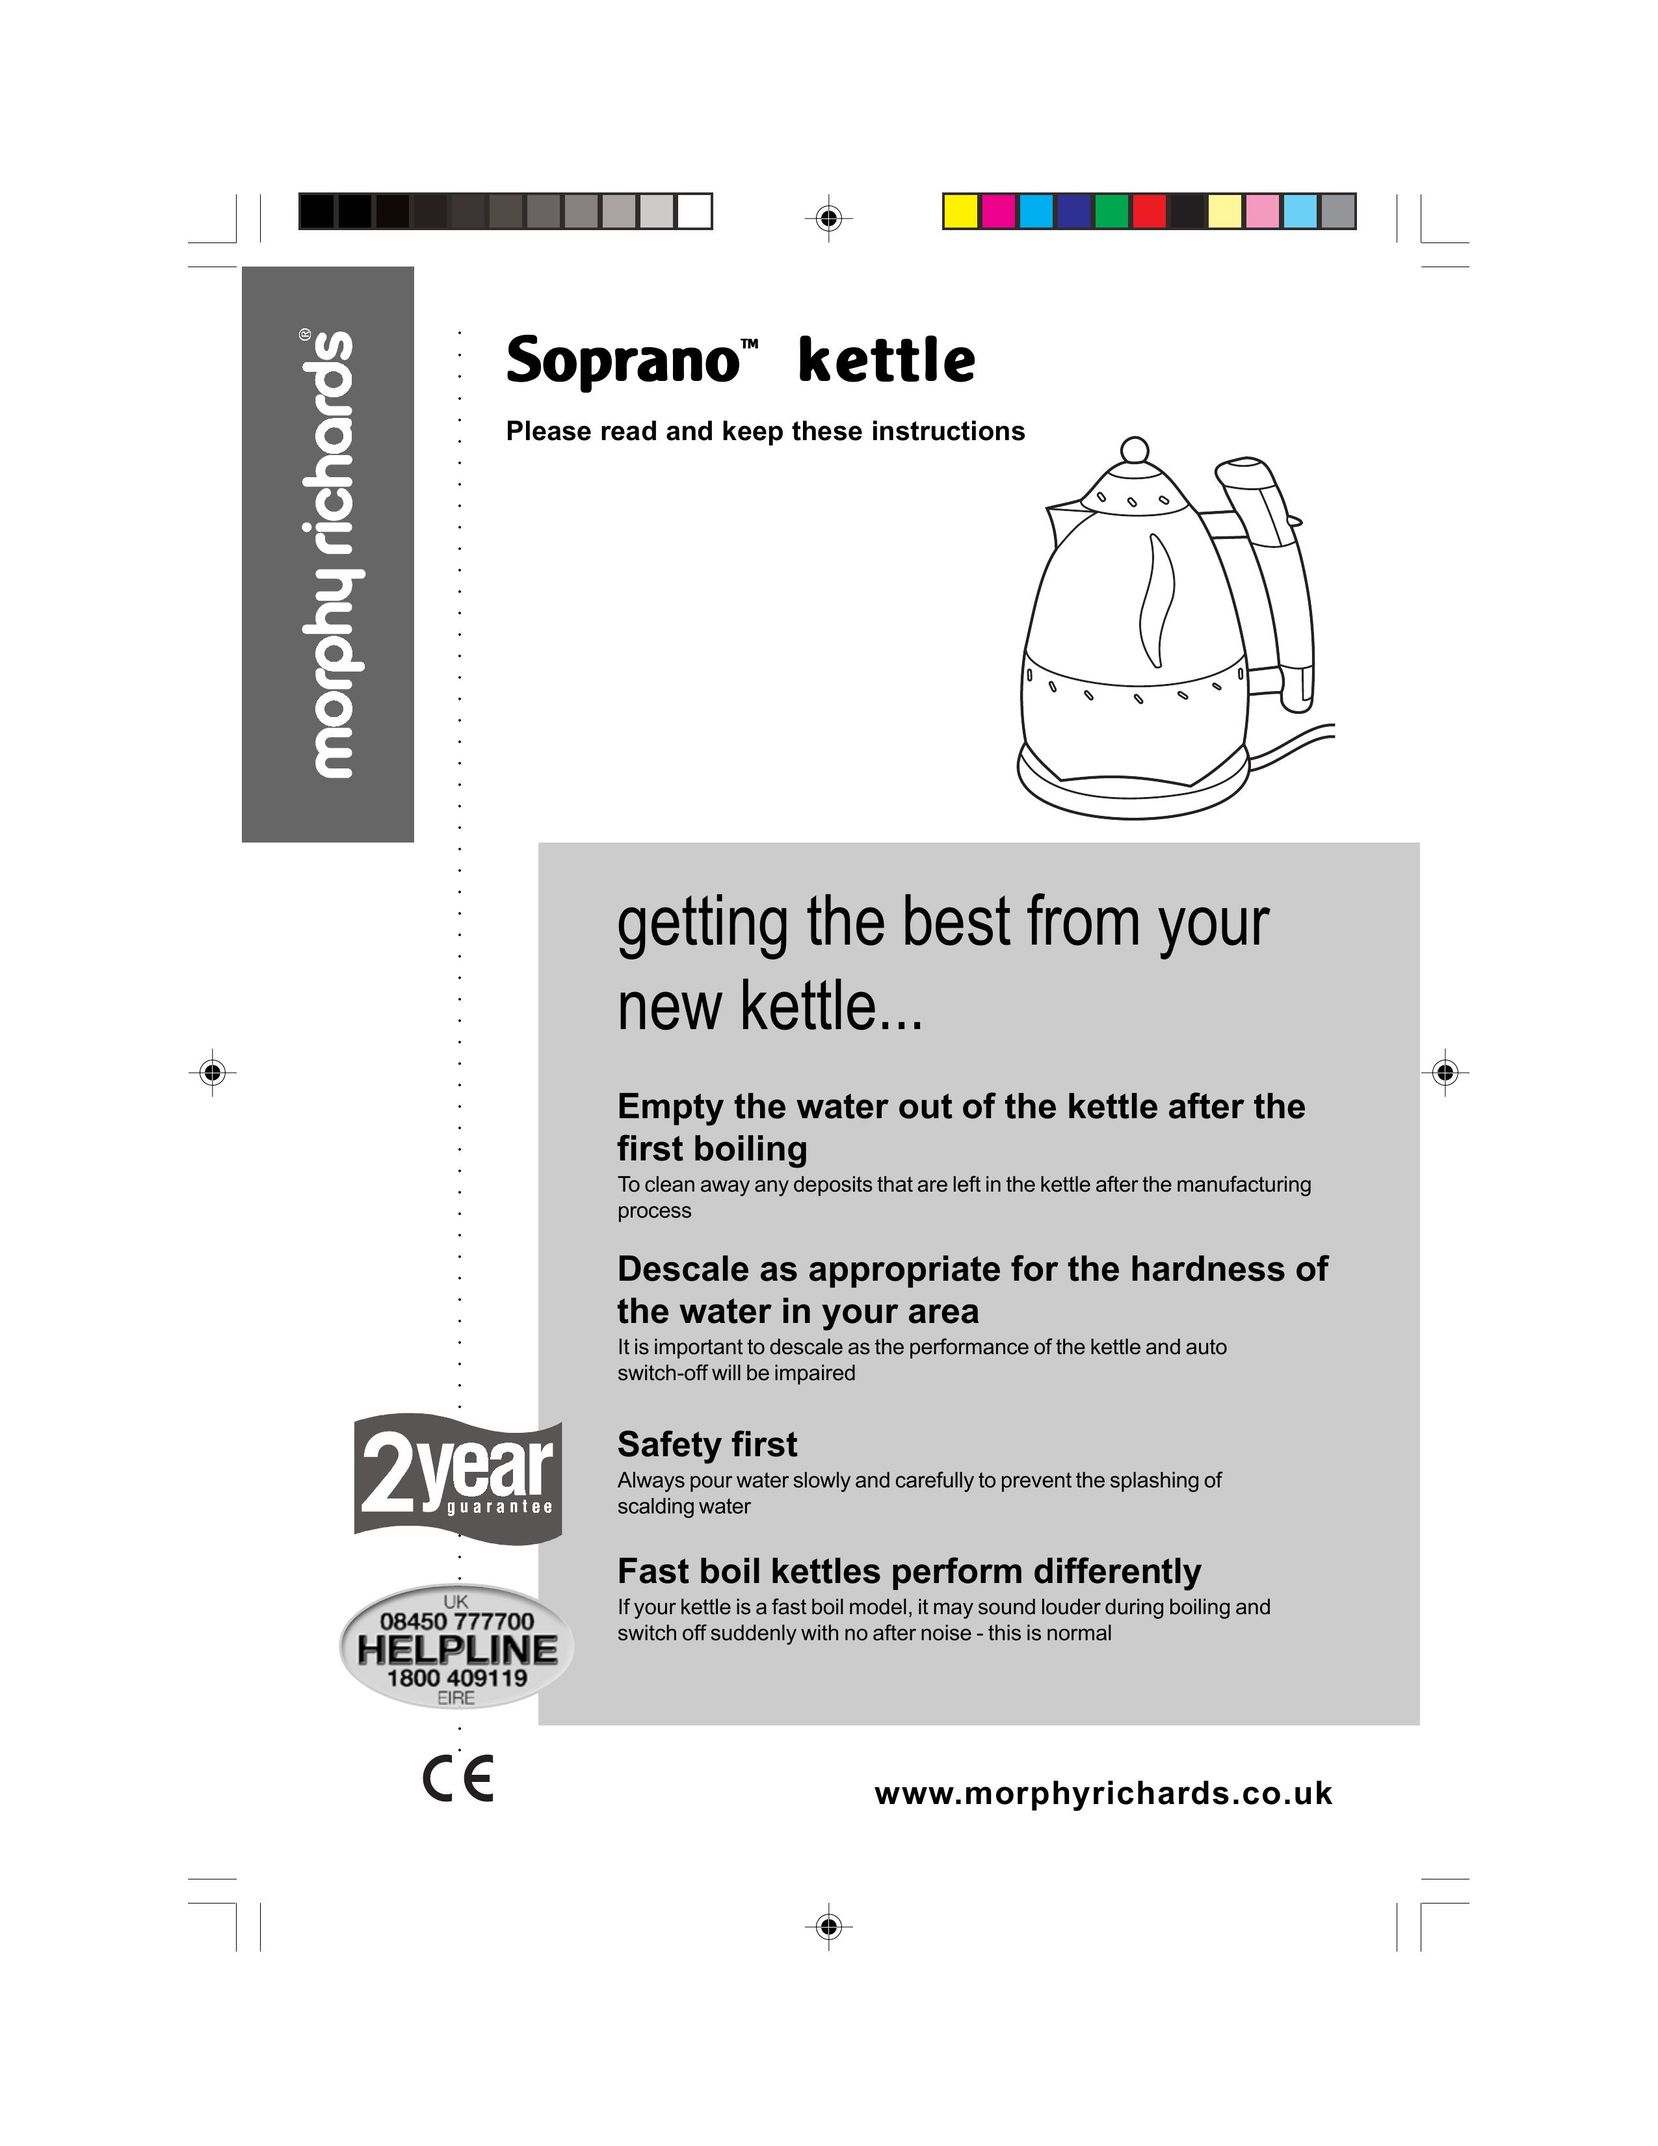 Morphy Richards Soprano kettle Hot Beverage Maker User Manual